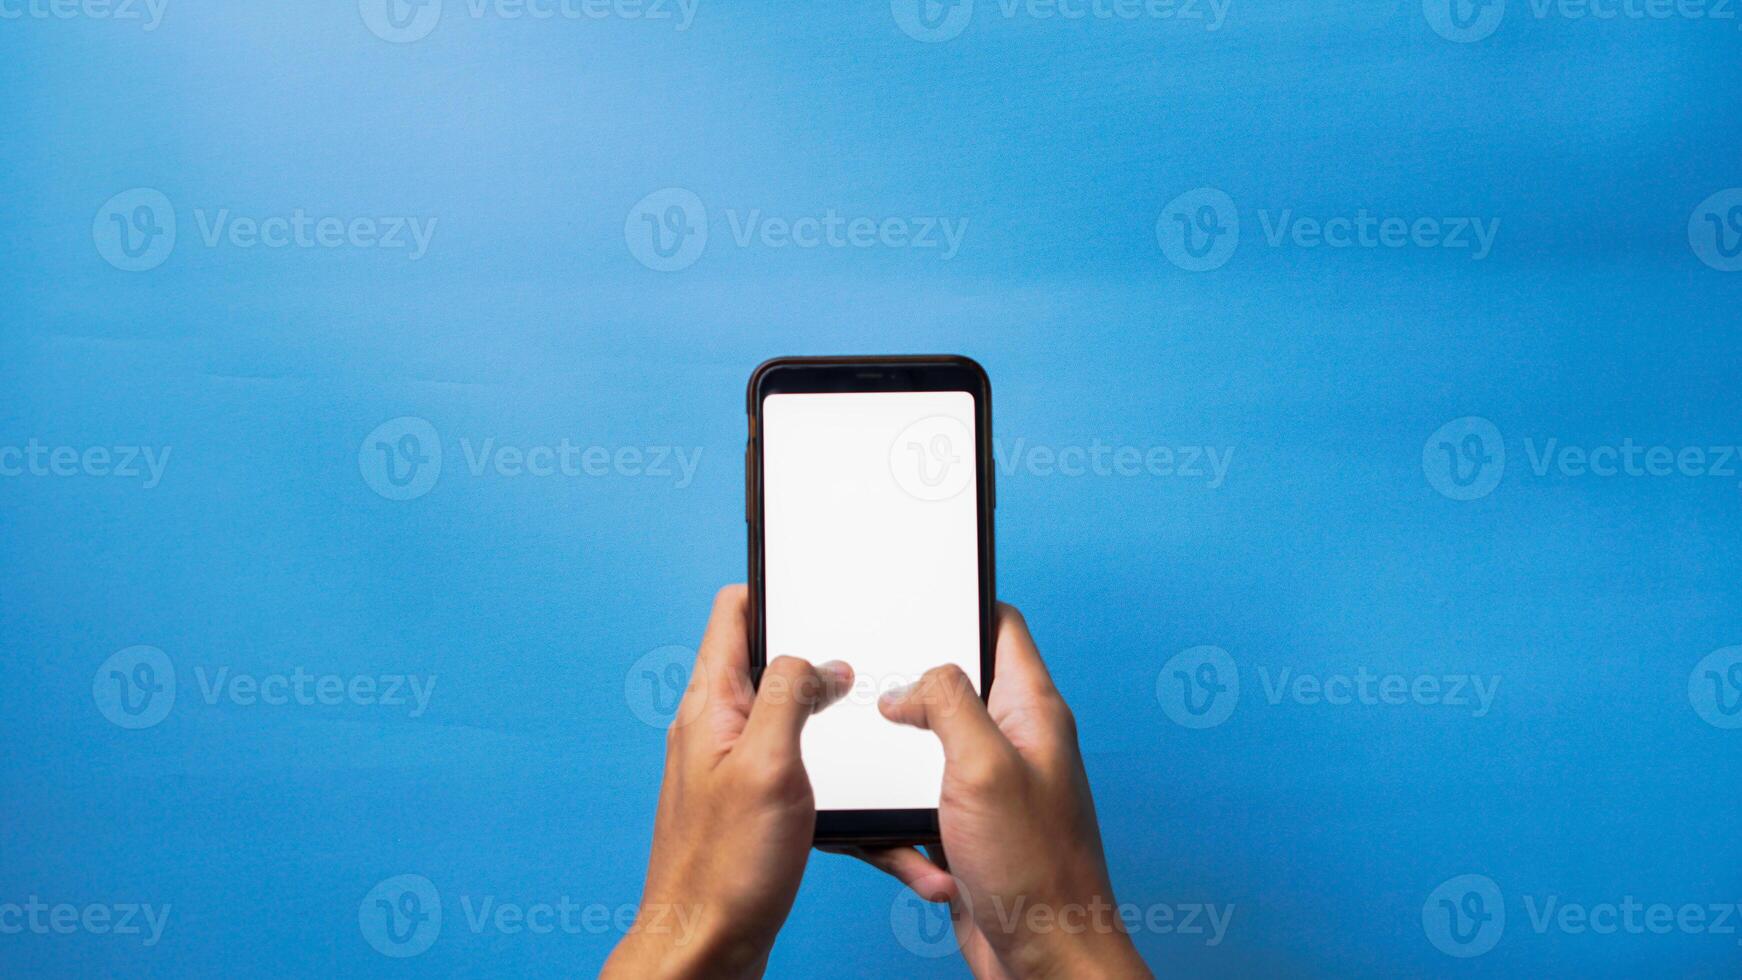 zwei Hände halten Smartphone mit leer Bildschirm Attrappe, Lehrmodell, Simulation rahmen, isoliert auf Blau Hintergrund foto